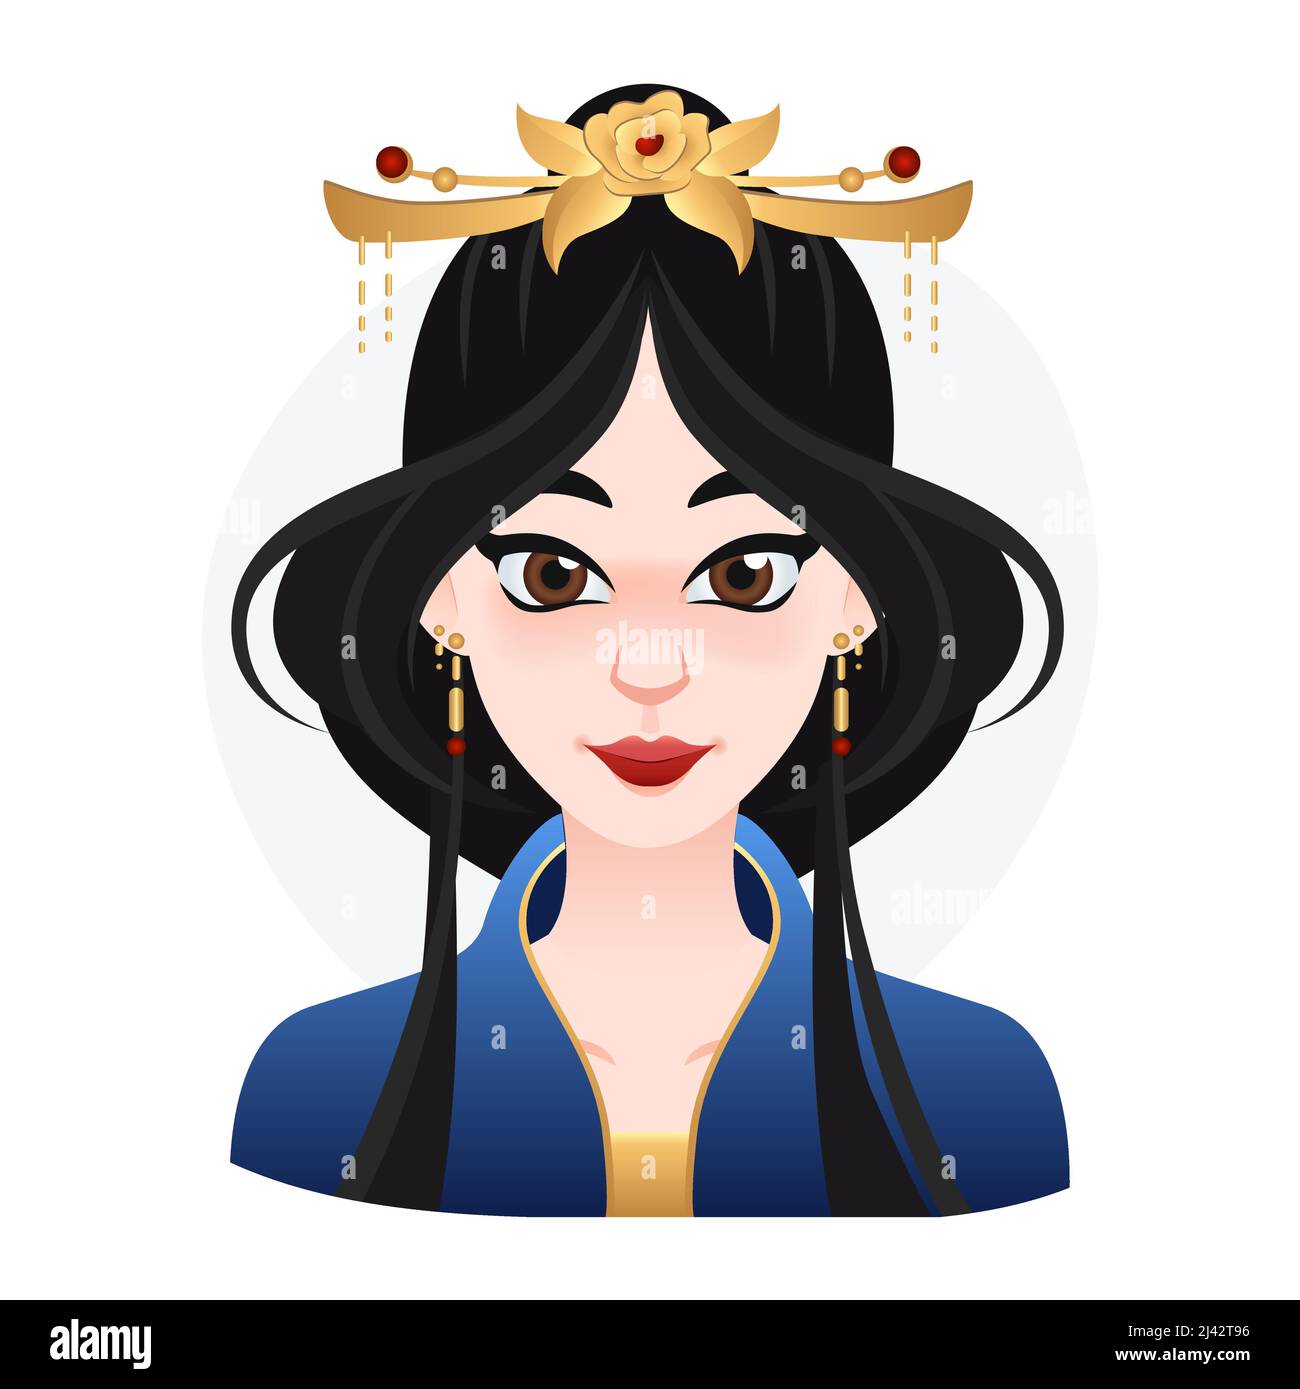 Caricature orientale femme belle. Cheveux longs noirs avec couronne sur le dessus. Illustration asiatique de princesse pour le Web, le jeu ou la publicité Illustration de Vecteur